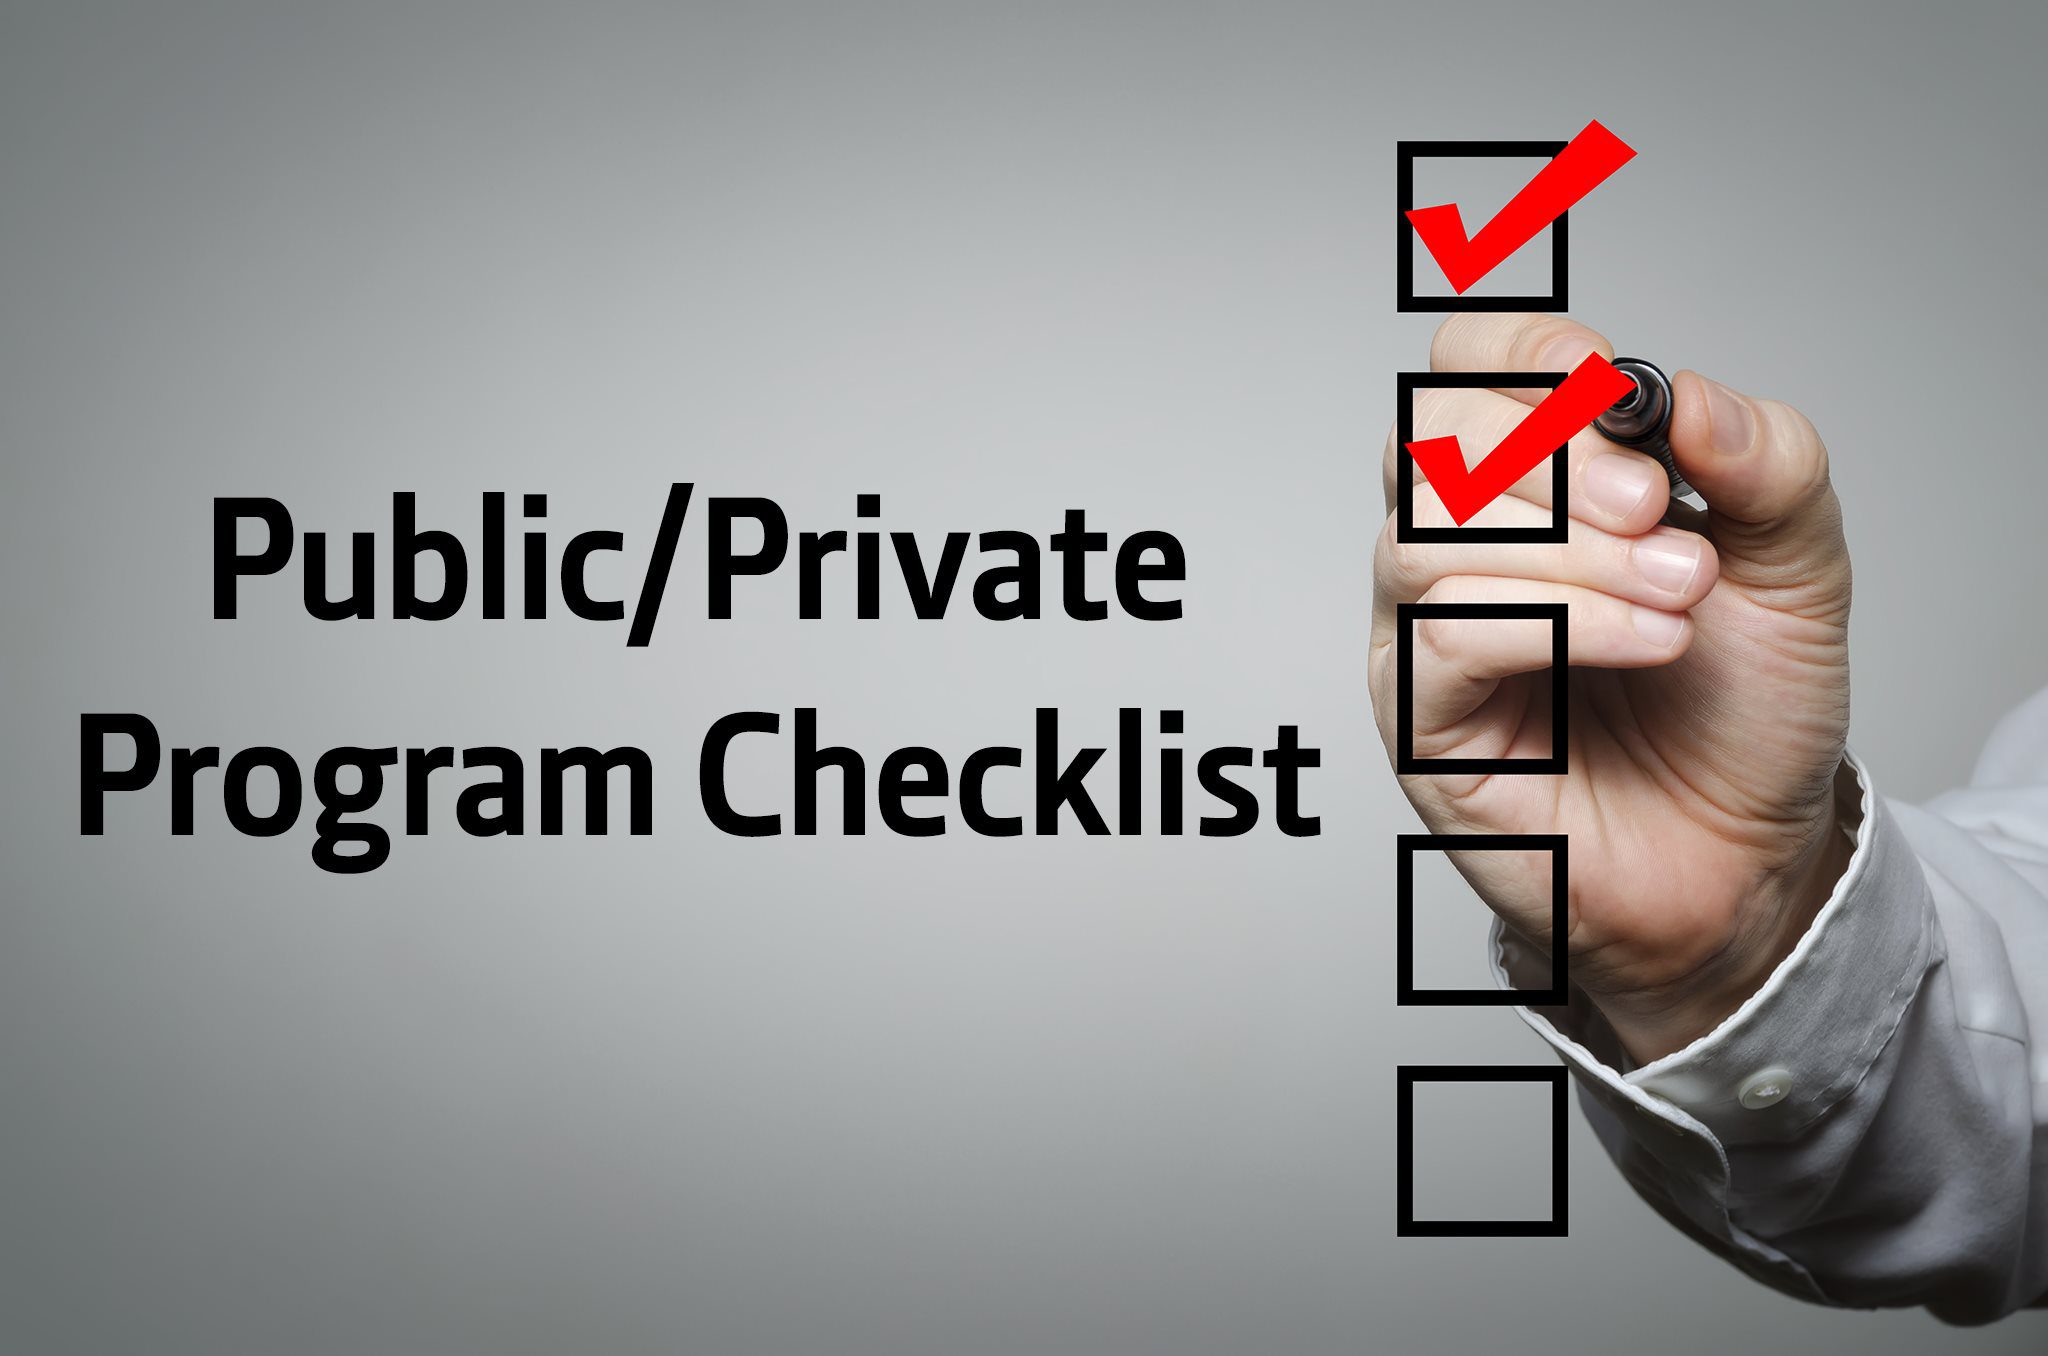 Public/Private Program Checklist